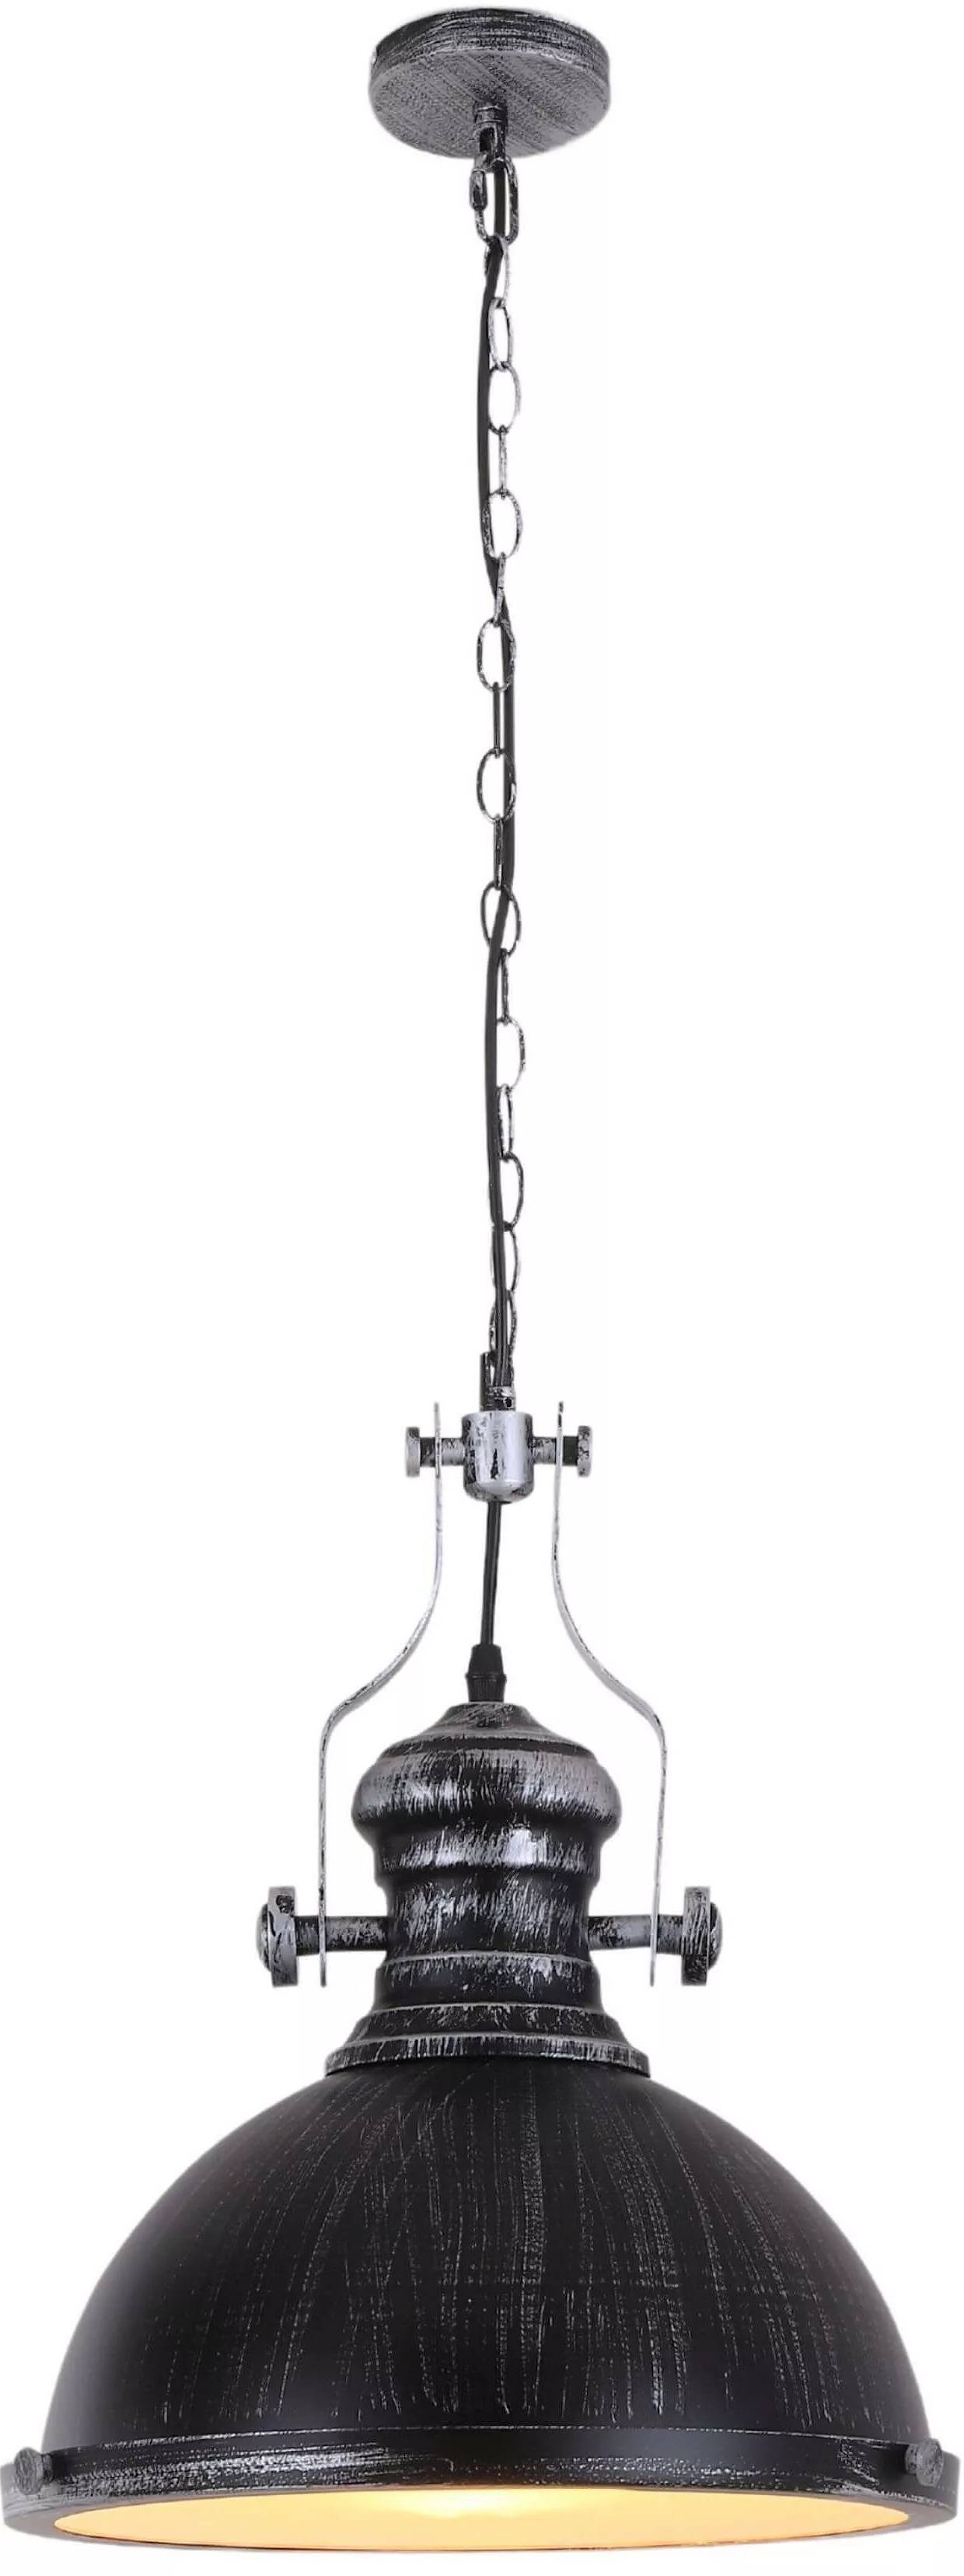 Lampe suspension en métal noir et argenté antique Ø33